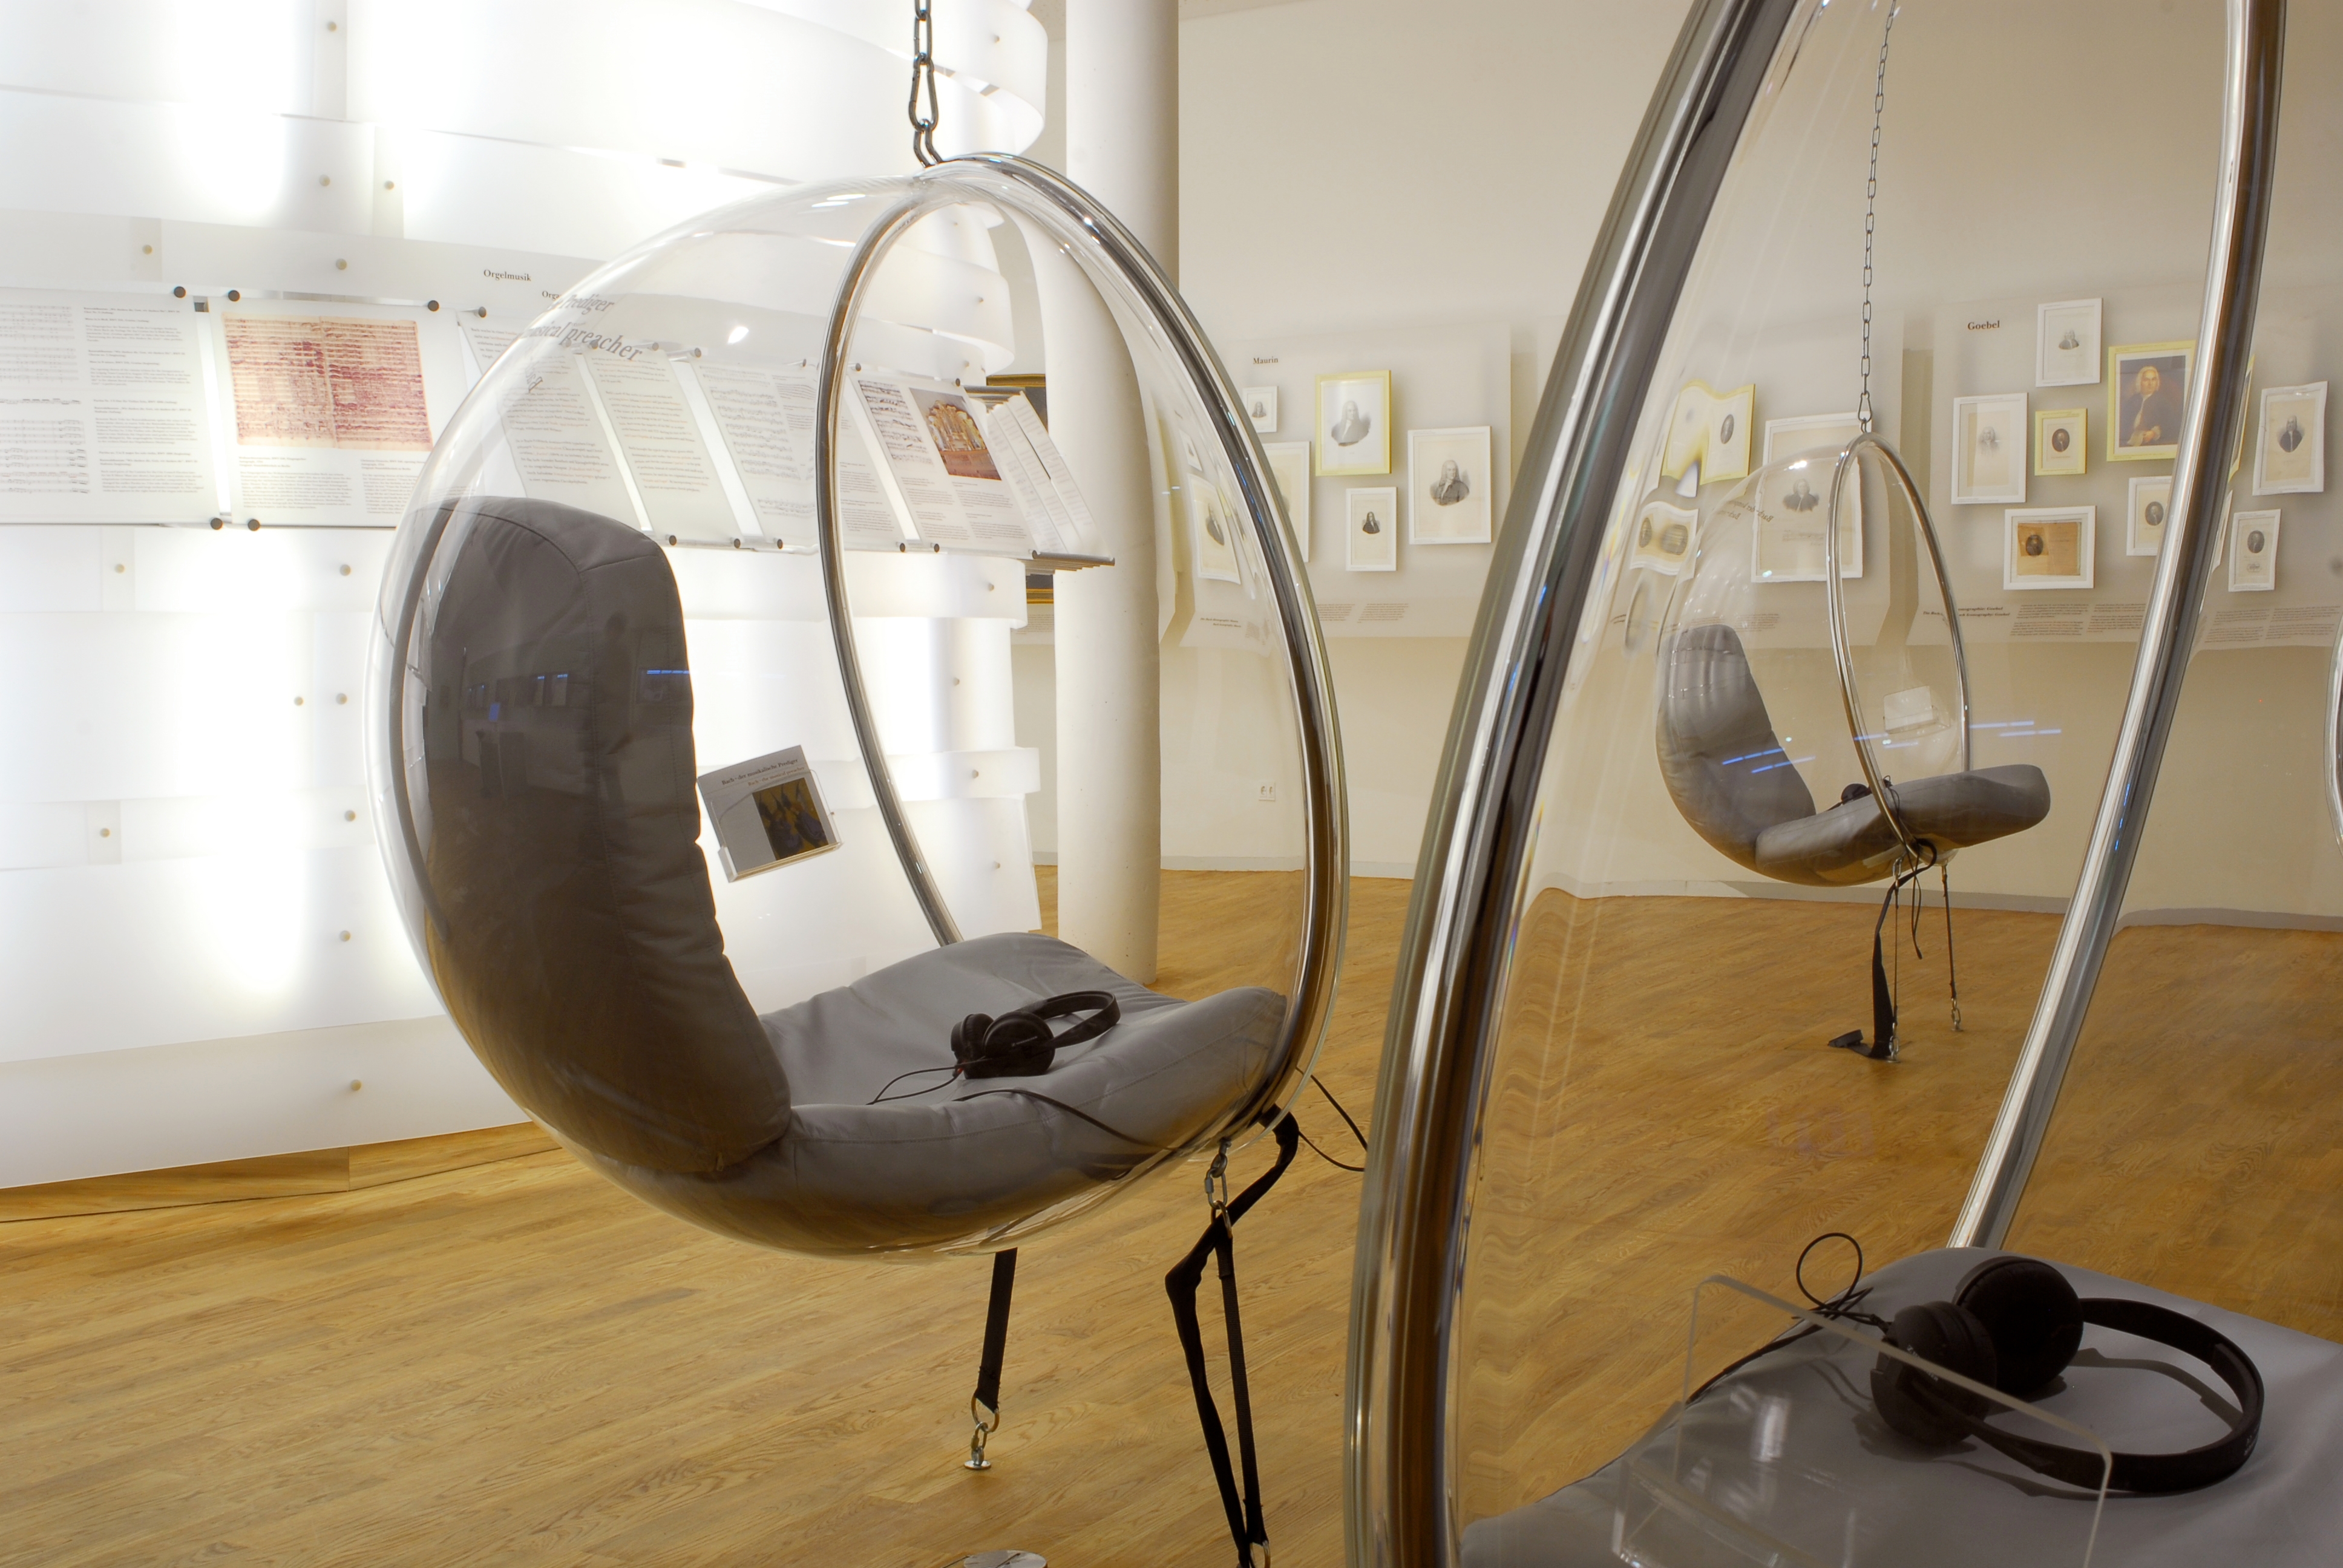 Die sogenannten Bubble-Chairs informieren im Bachhaus fachgerecht, mit Kopfhörern, rund um das Leben von Bach und dessen Werke.
